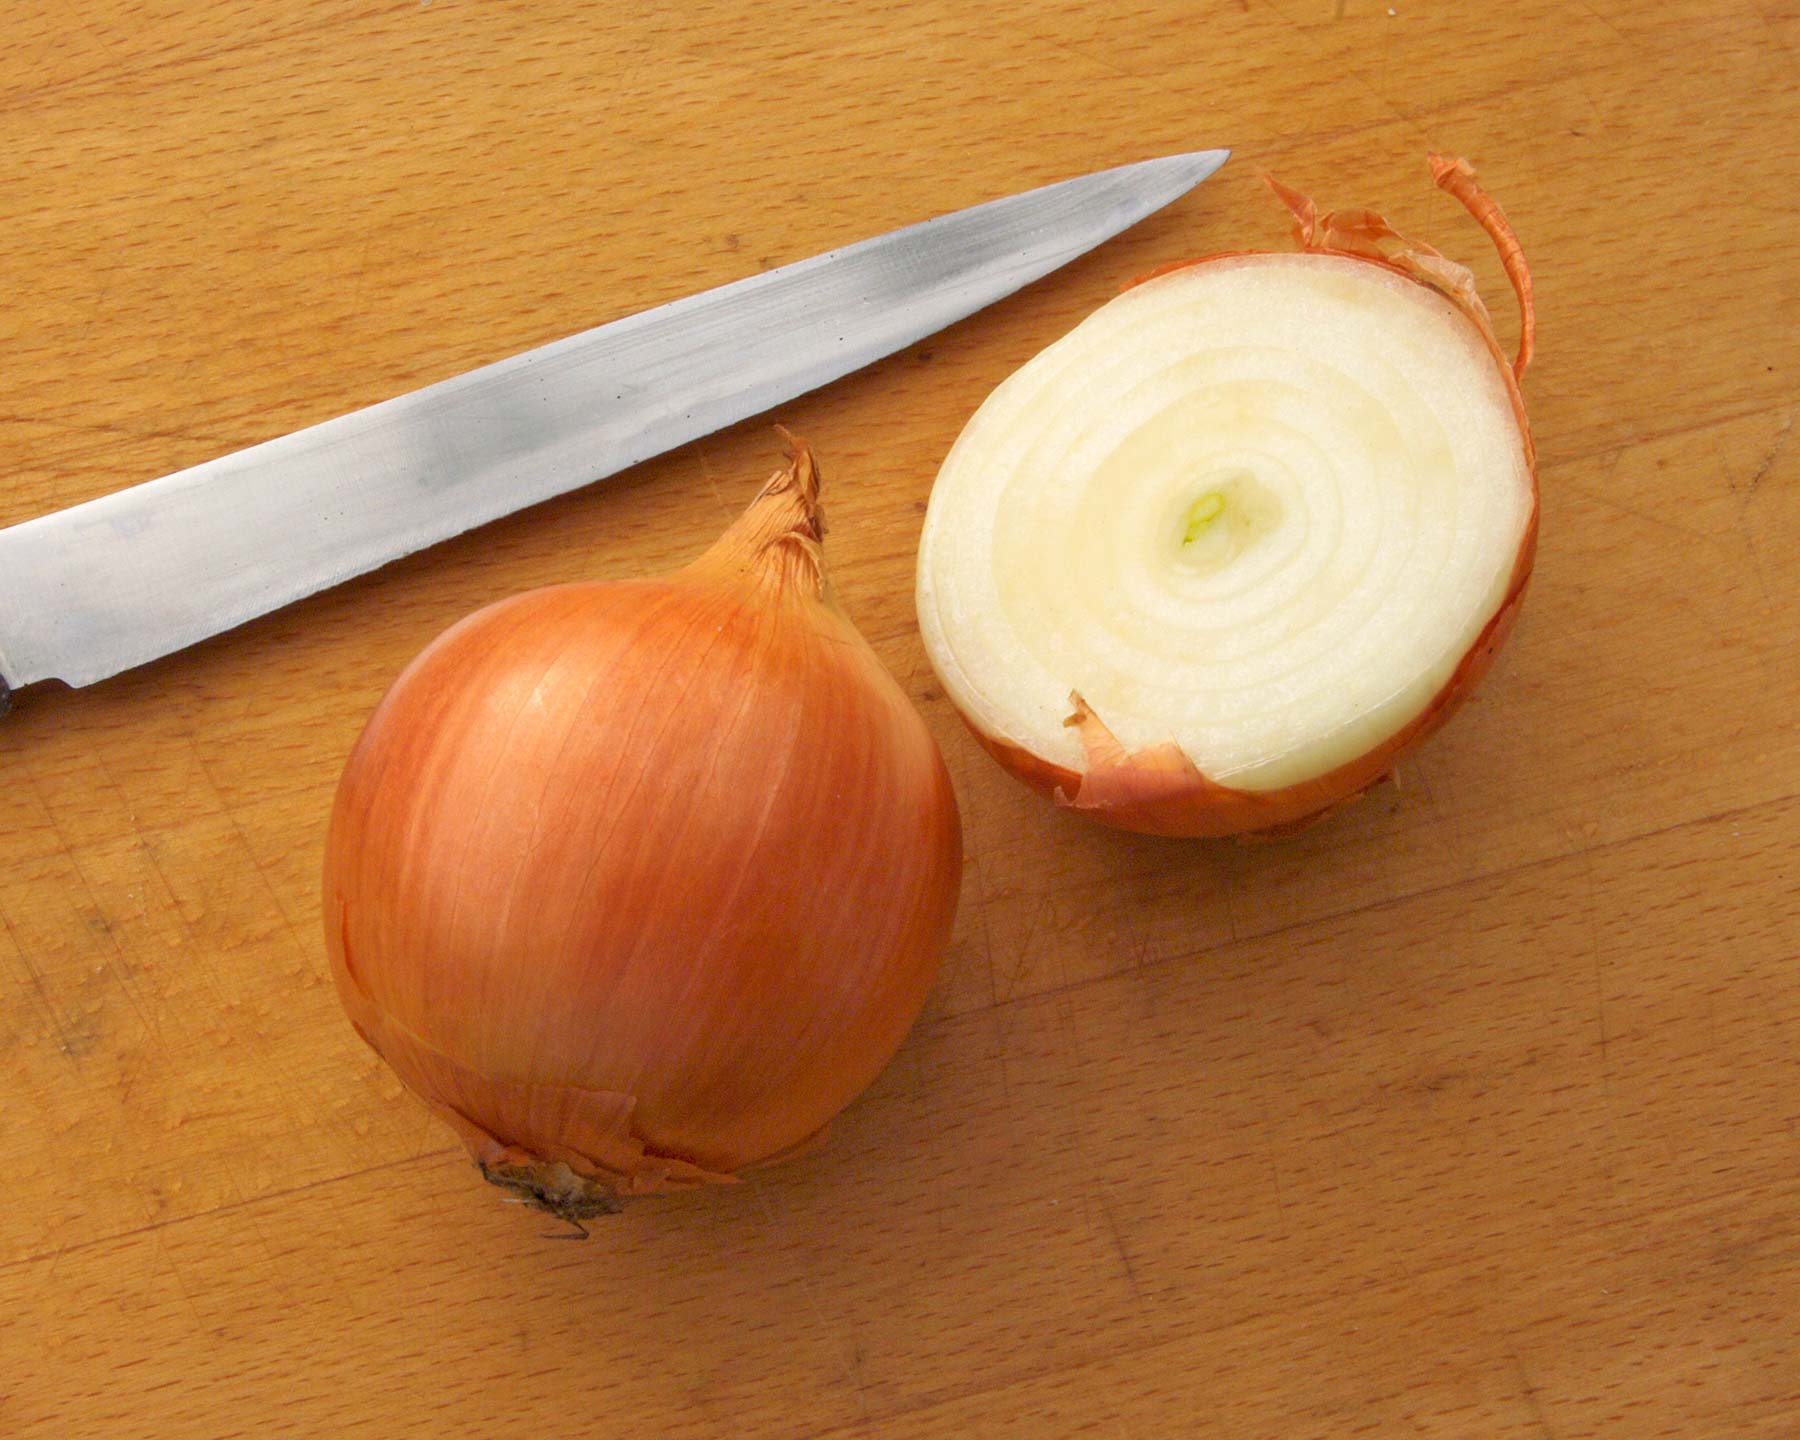 Allium cepa - the common brown onion